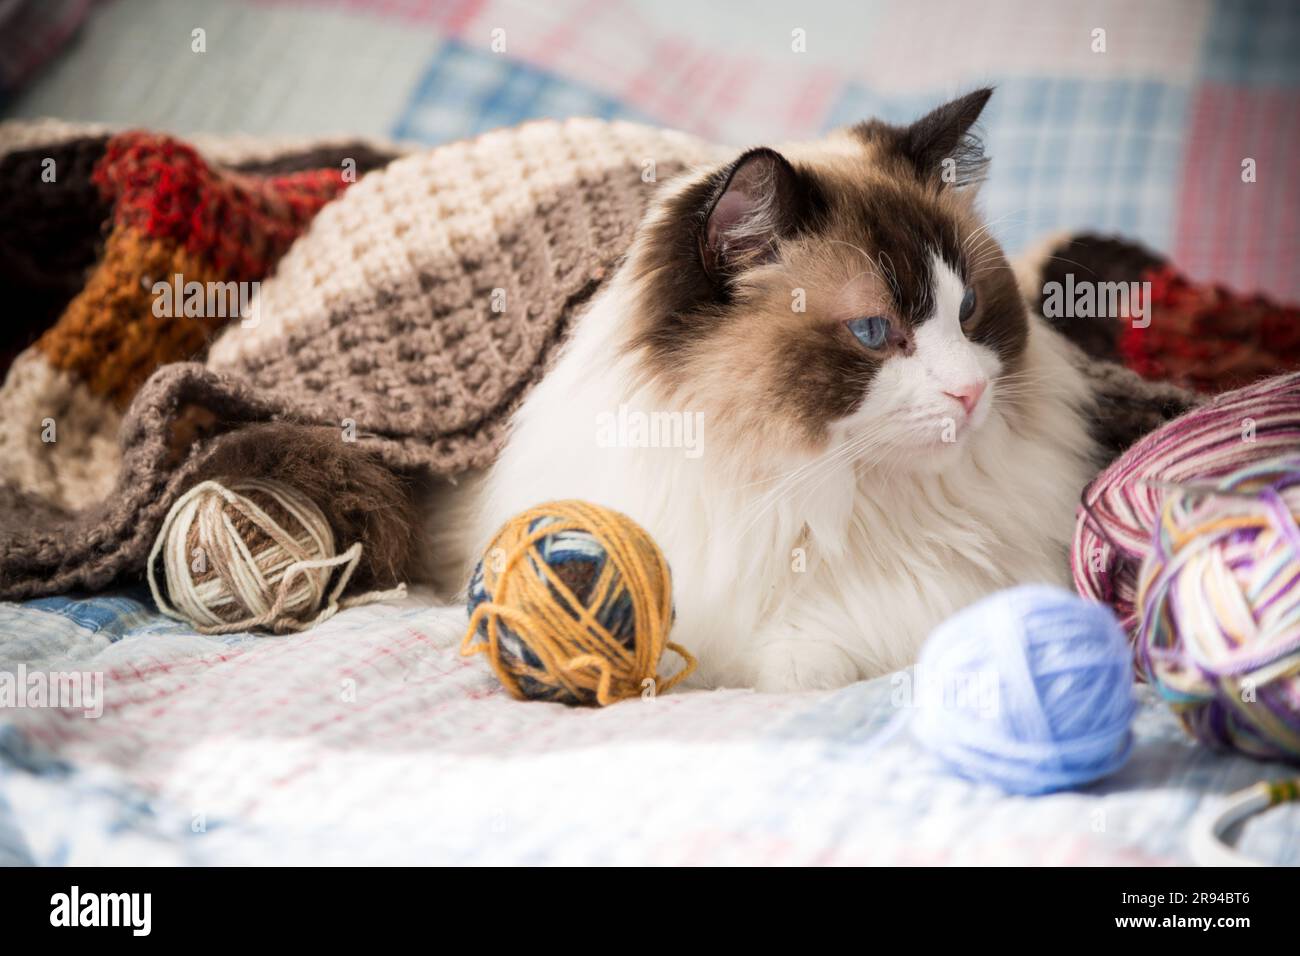 Farbige Fäden, Stricknadeln und andere Artikel zum Handstricken und eine süße Hauskatze Ragdoll auf dem Bett. Stockfoto